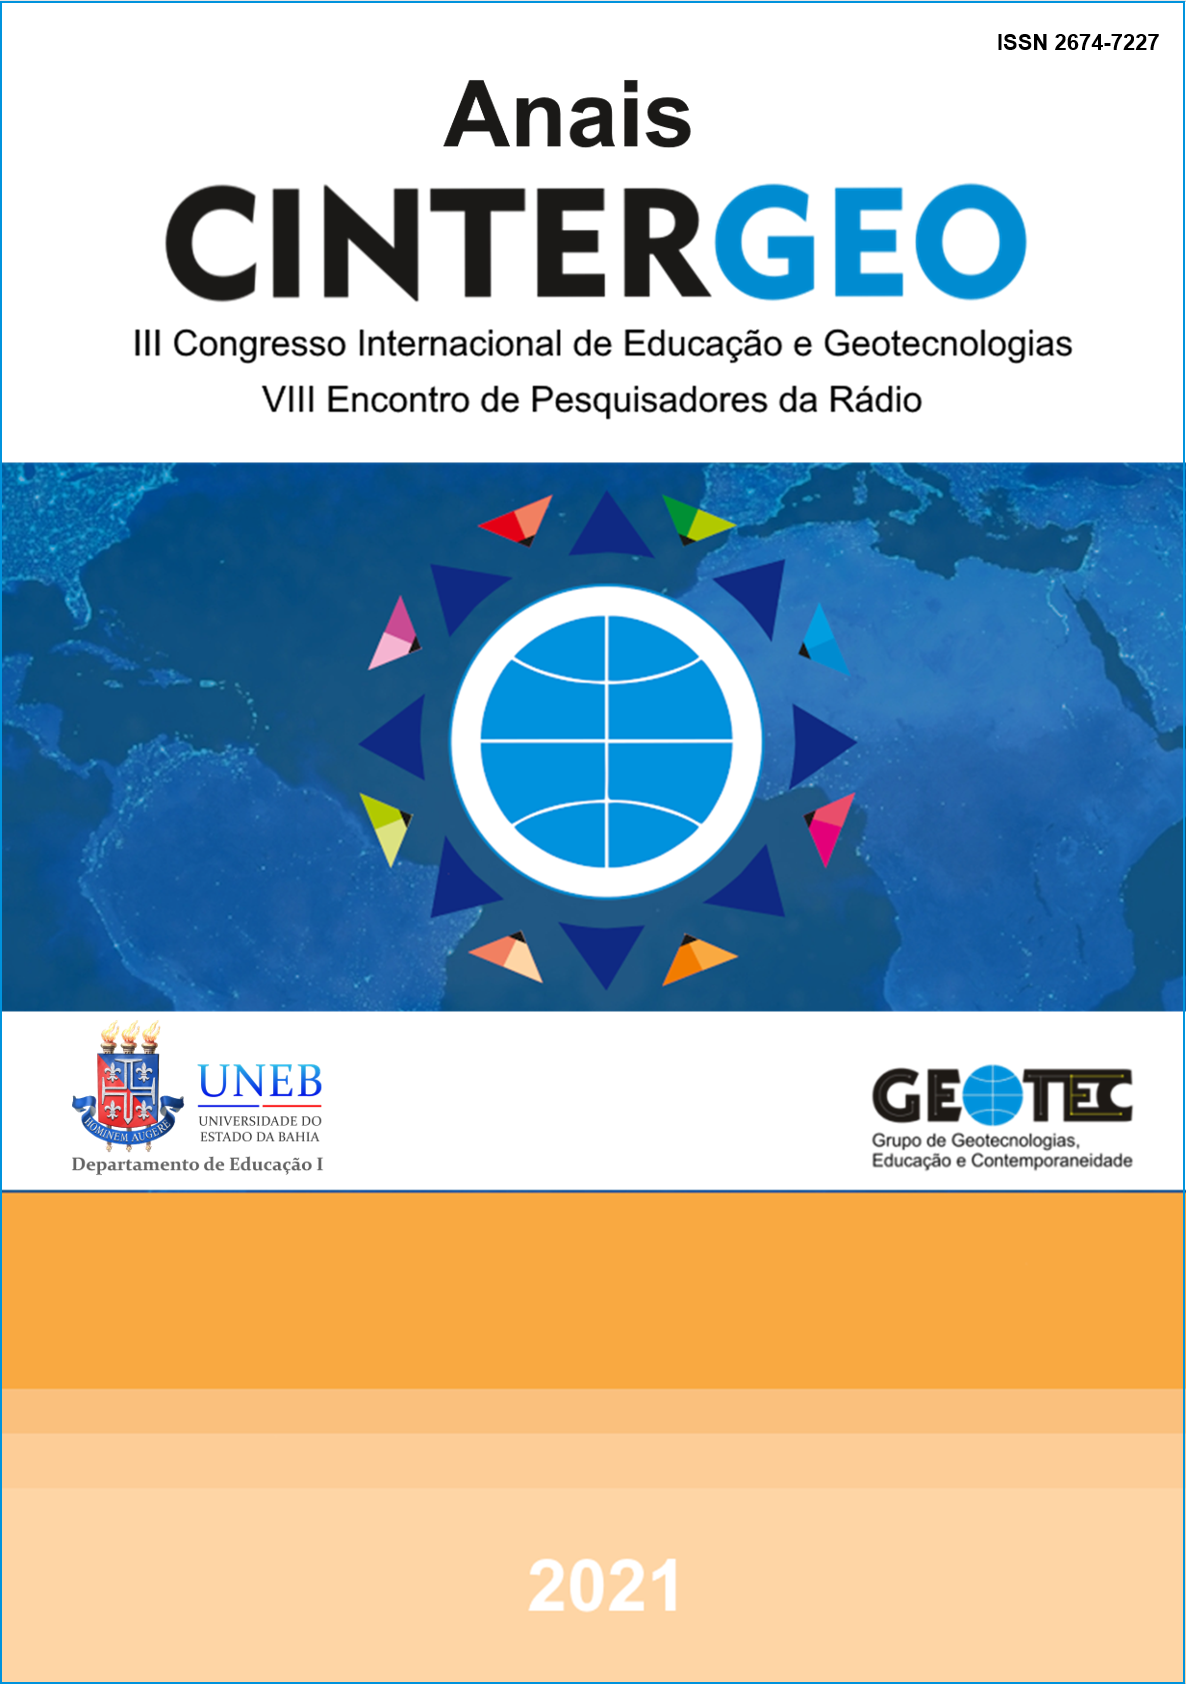 Capa dos Anais do Cintergeo - Edição 2021 contendo no centro o símbolo oficial do Cintergeo sobre um fundo com a imagem em tons de azul do mapa mundi.